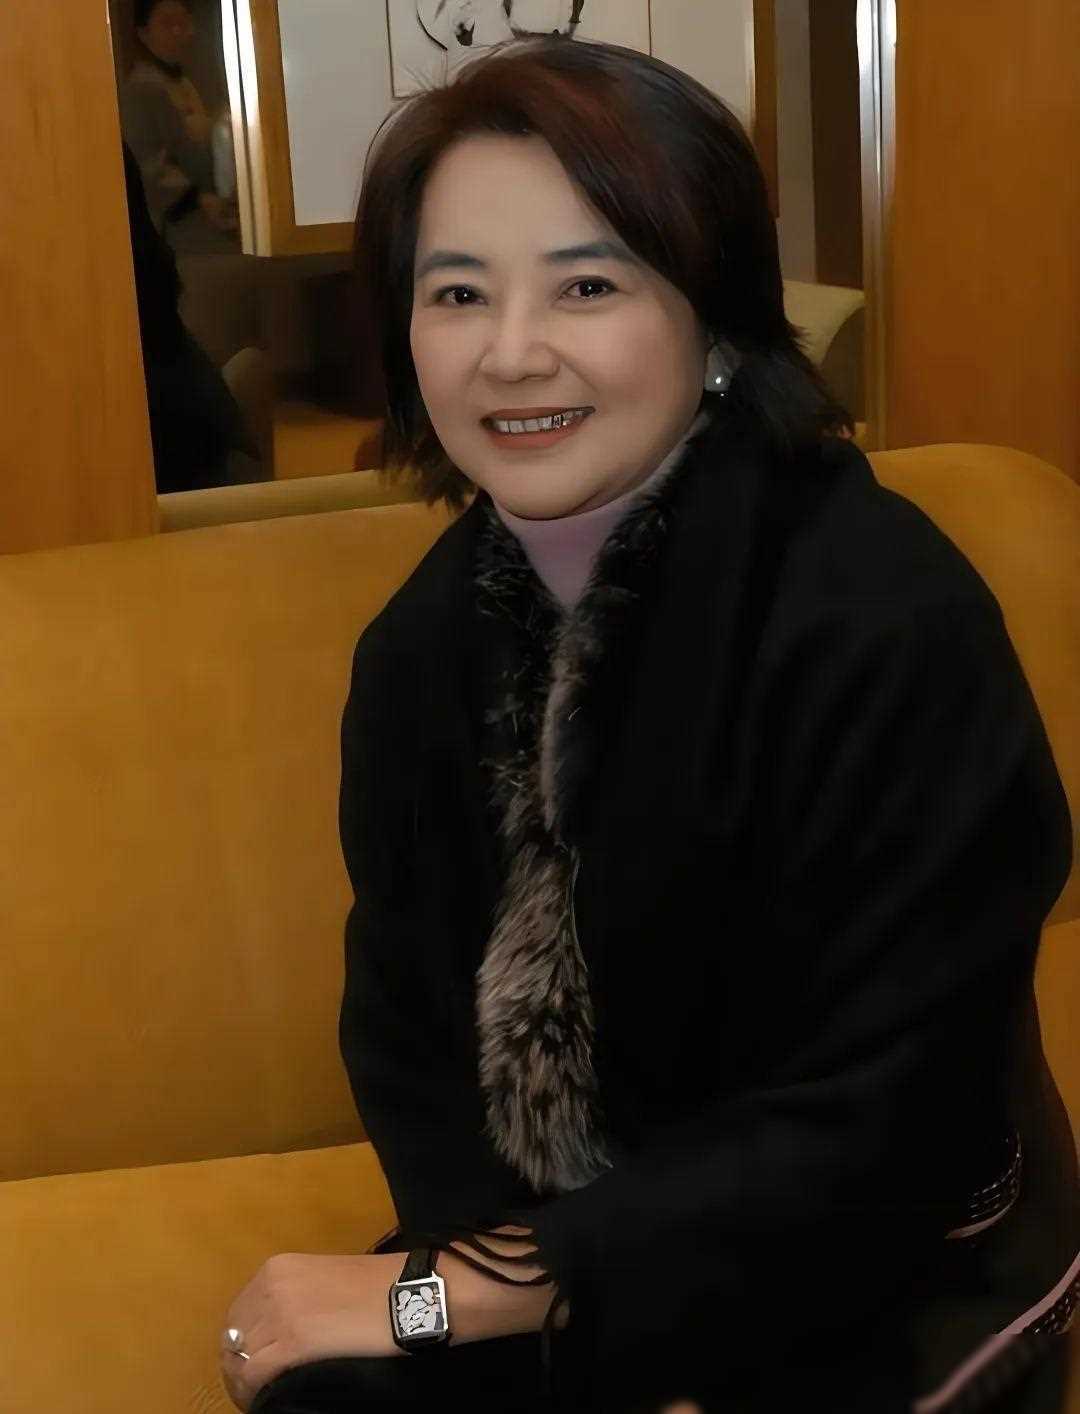 她是金马影后,嫁入香港高官家庭,如今优雅迷人逾越岁月